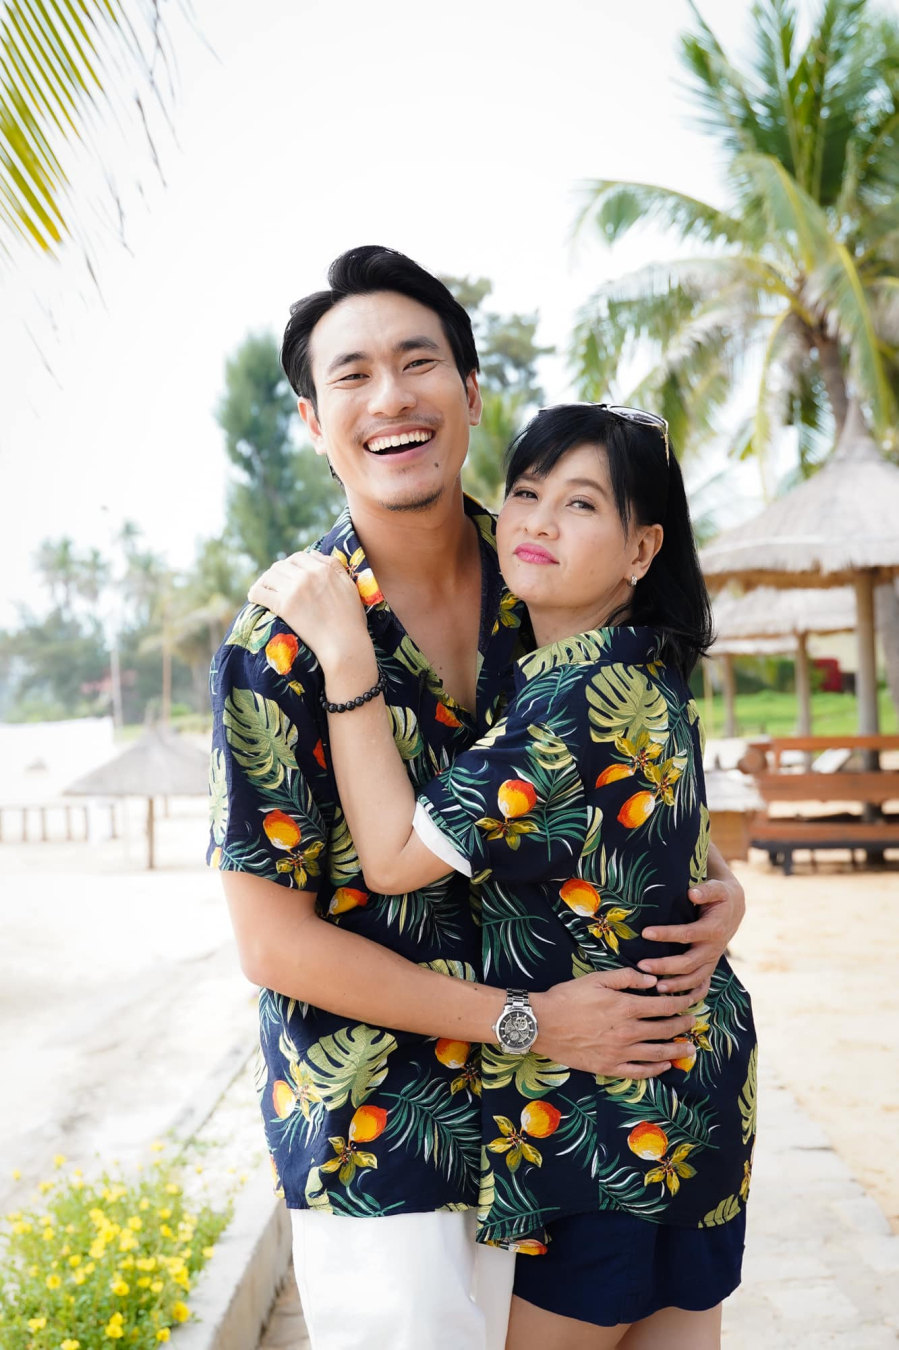 Cát Phượng và Kiều Minh Tuấn từng là cặp đôi đẹp trong làng giải trí Việt